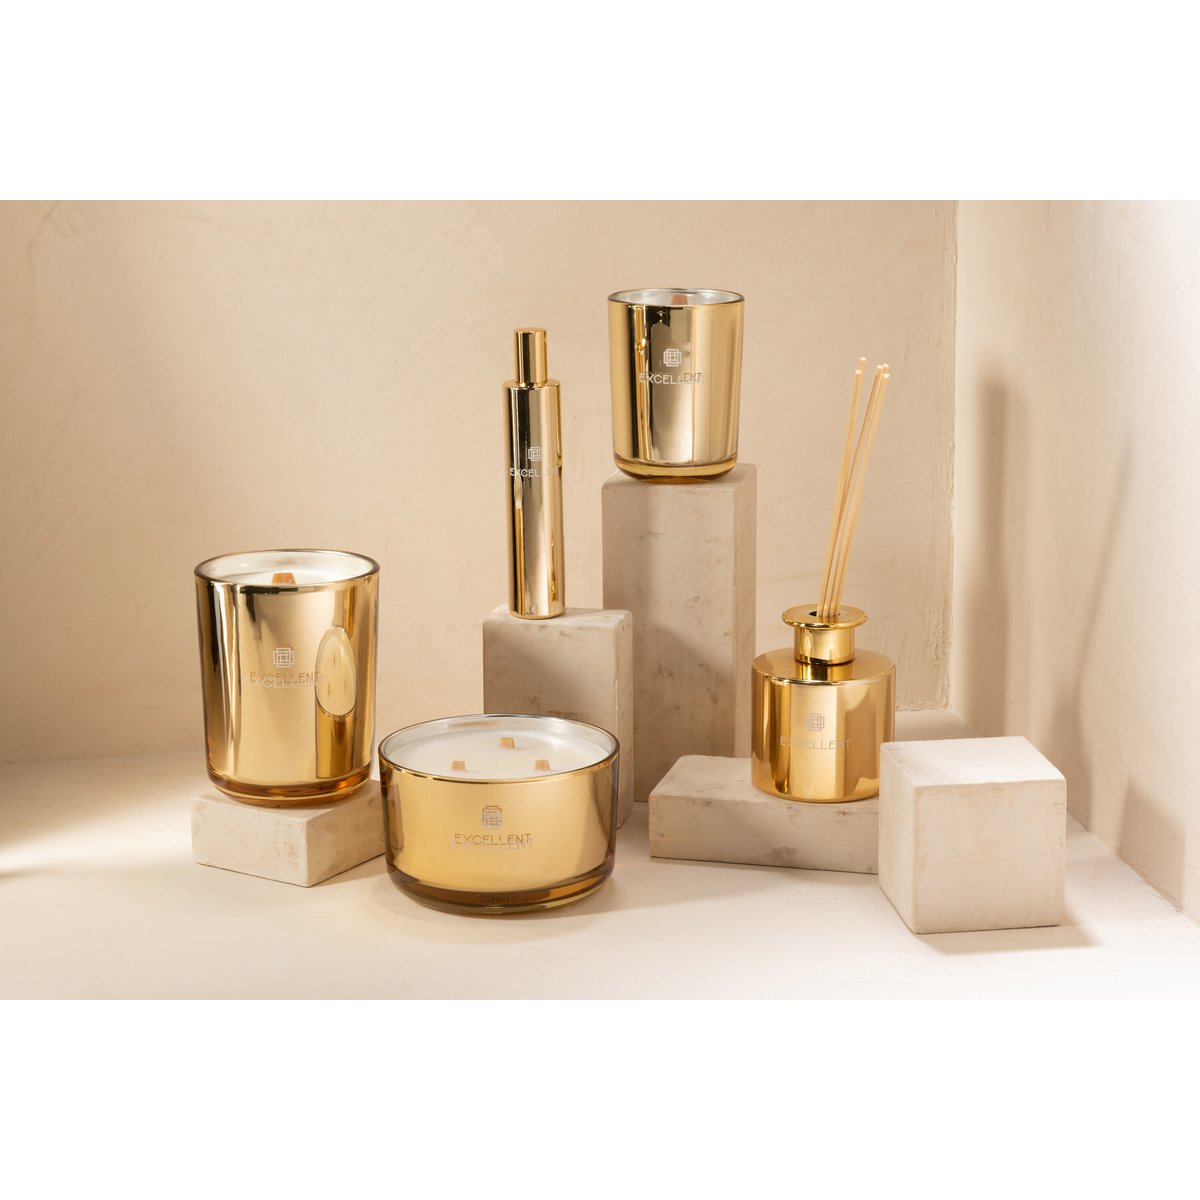 J-Line Excellent Duftkerze – Golden Honey – 80 Stunden – Gold